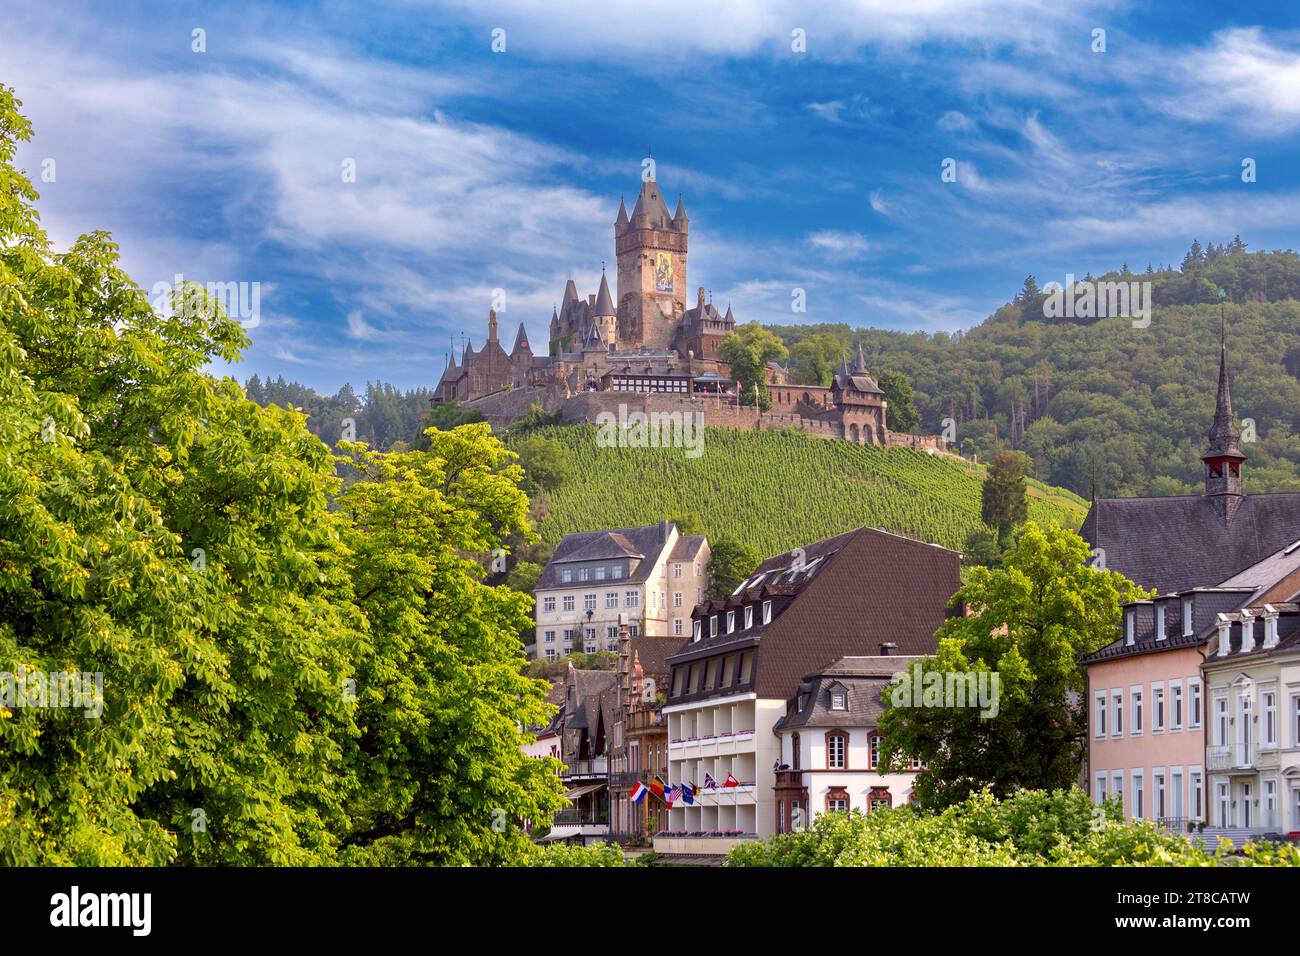 Fortezza medievale europea di Reichsburg su una collina con vigneti in una giornata di sole. Cochem, Germania. Foto Stock